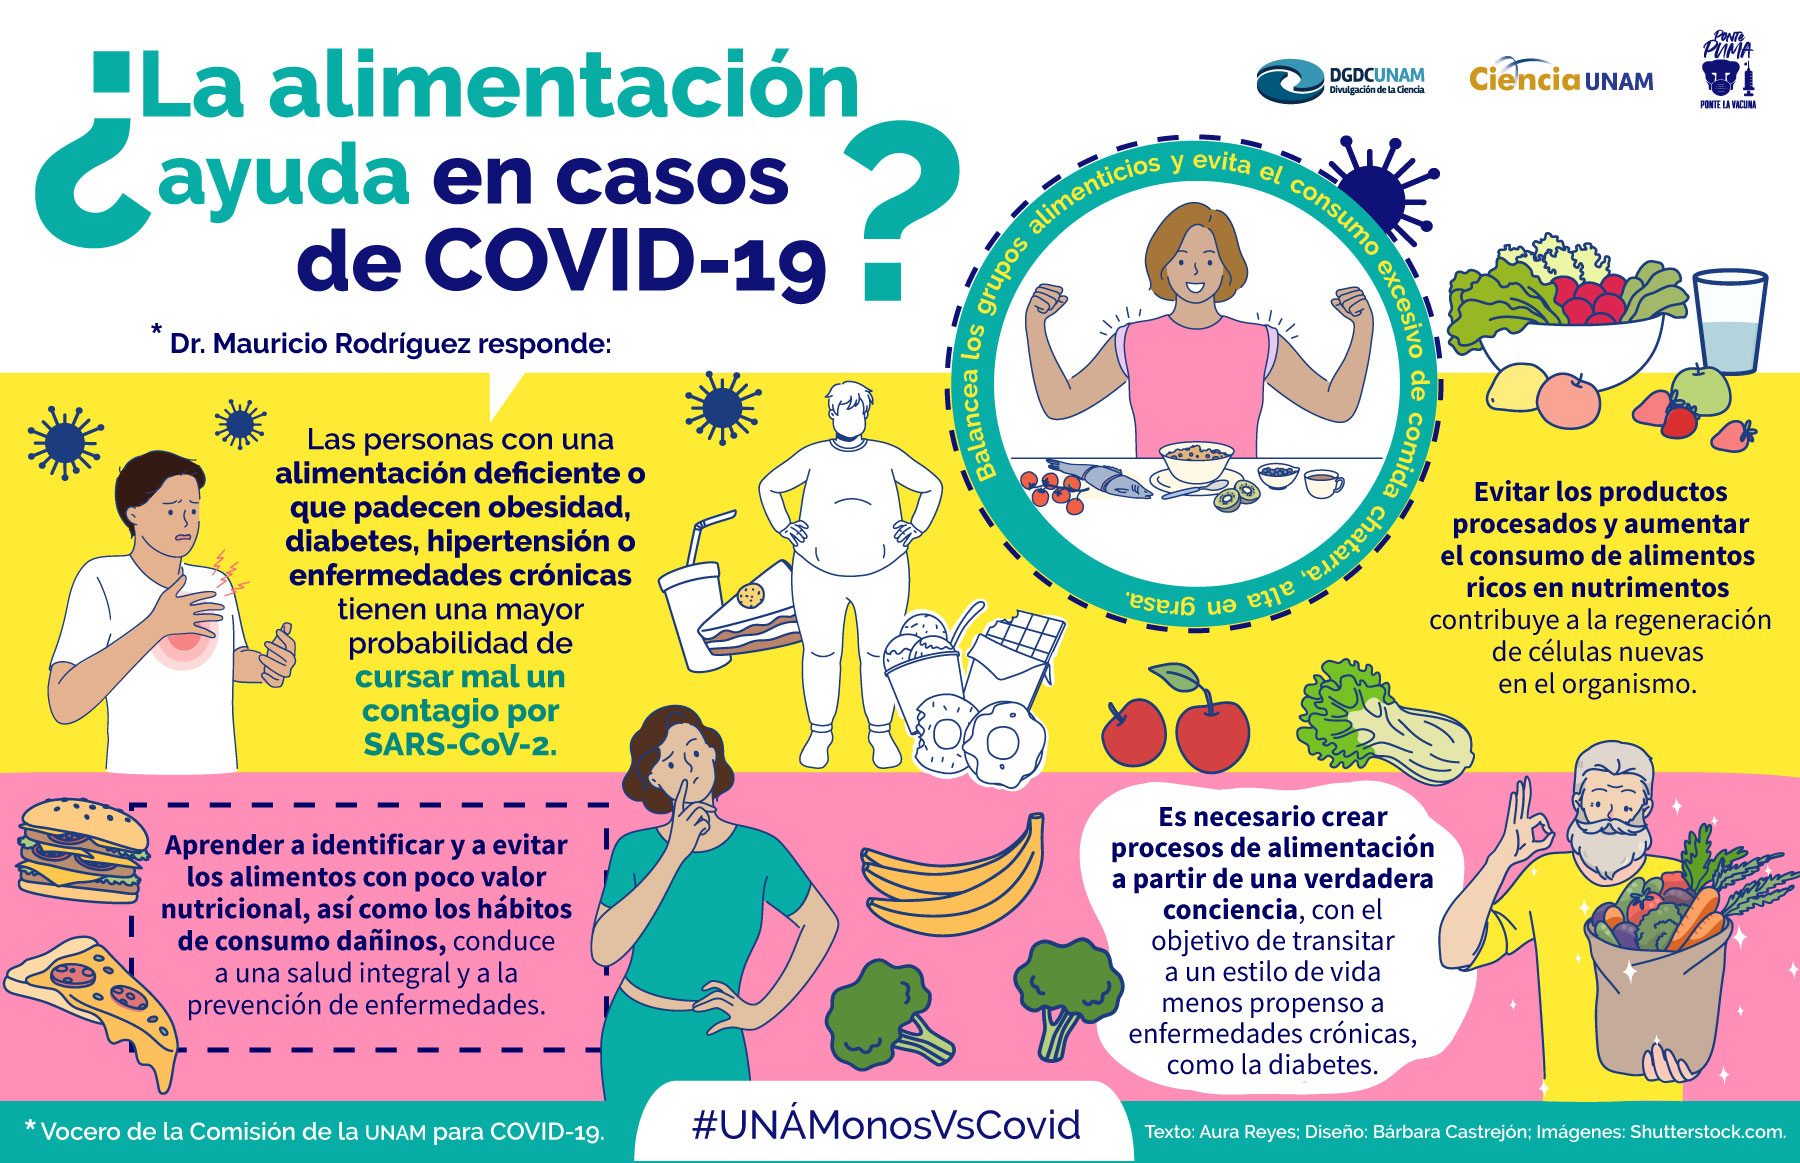 Coronavirus ¿La alimentación ayuda? - Ciencia UNAM